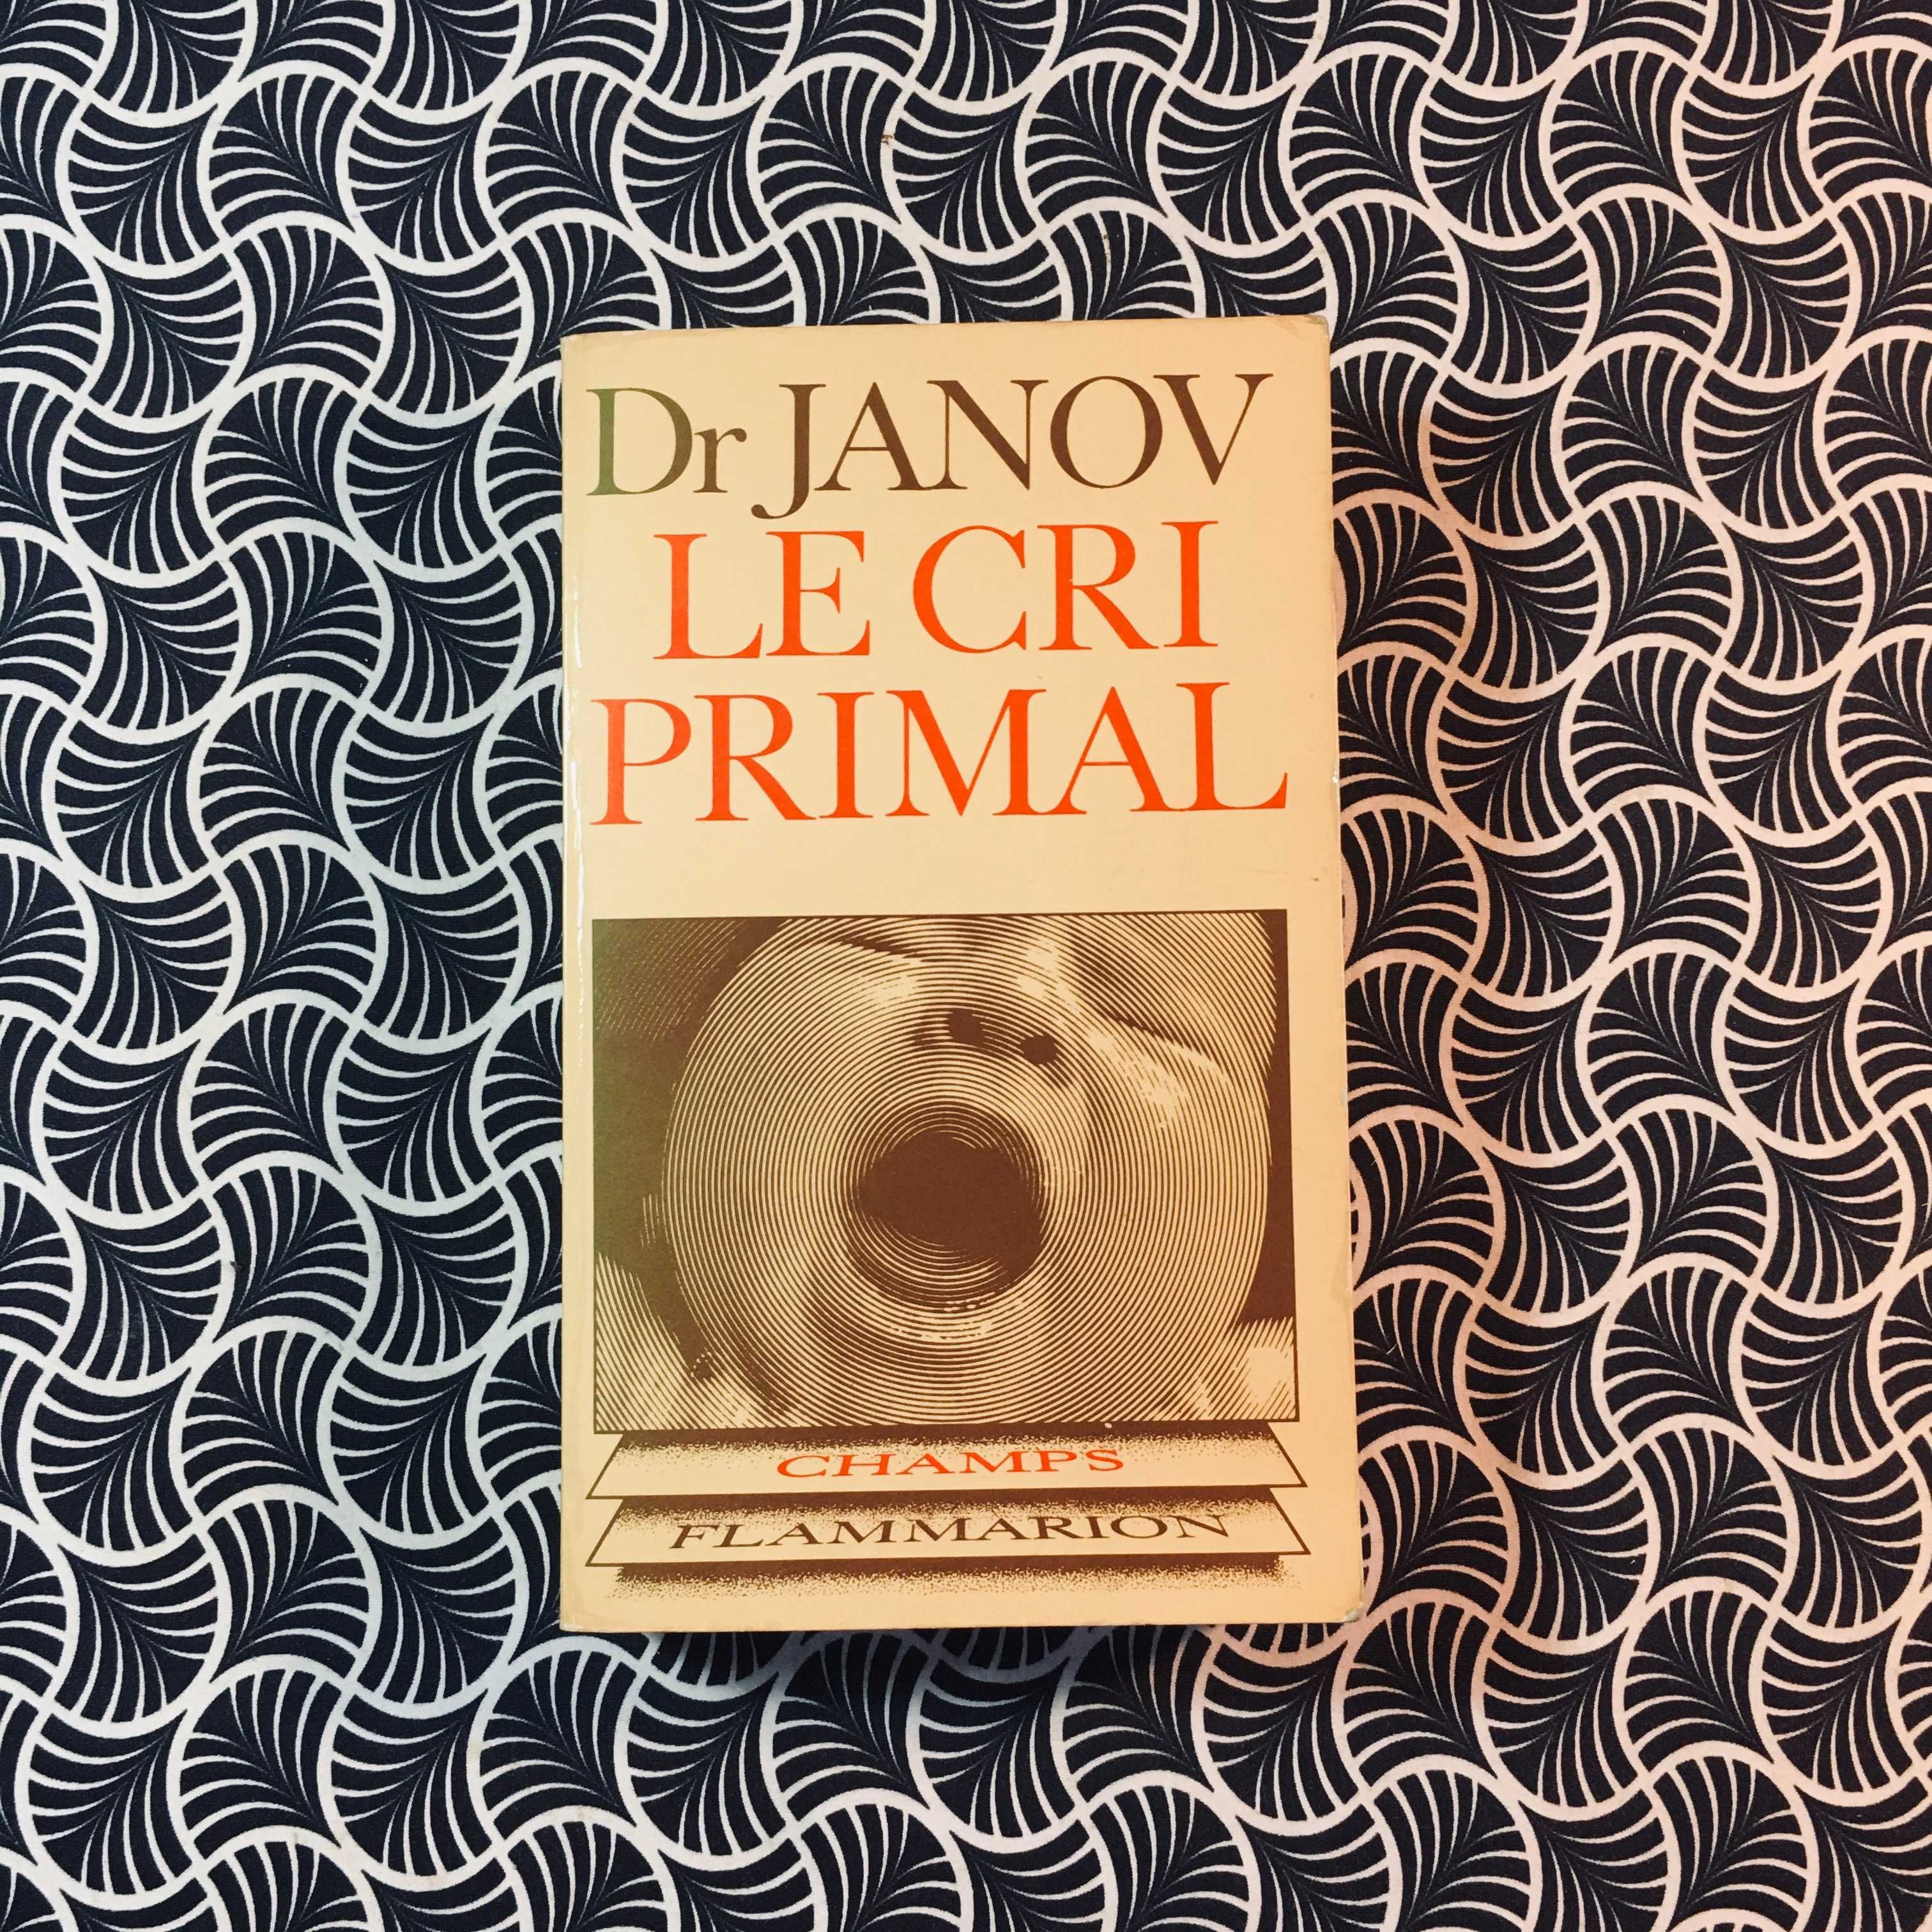 Le Cri Primal - Dr Janov